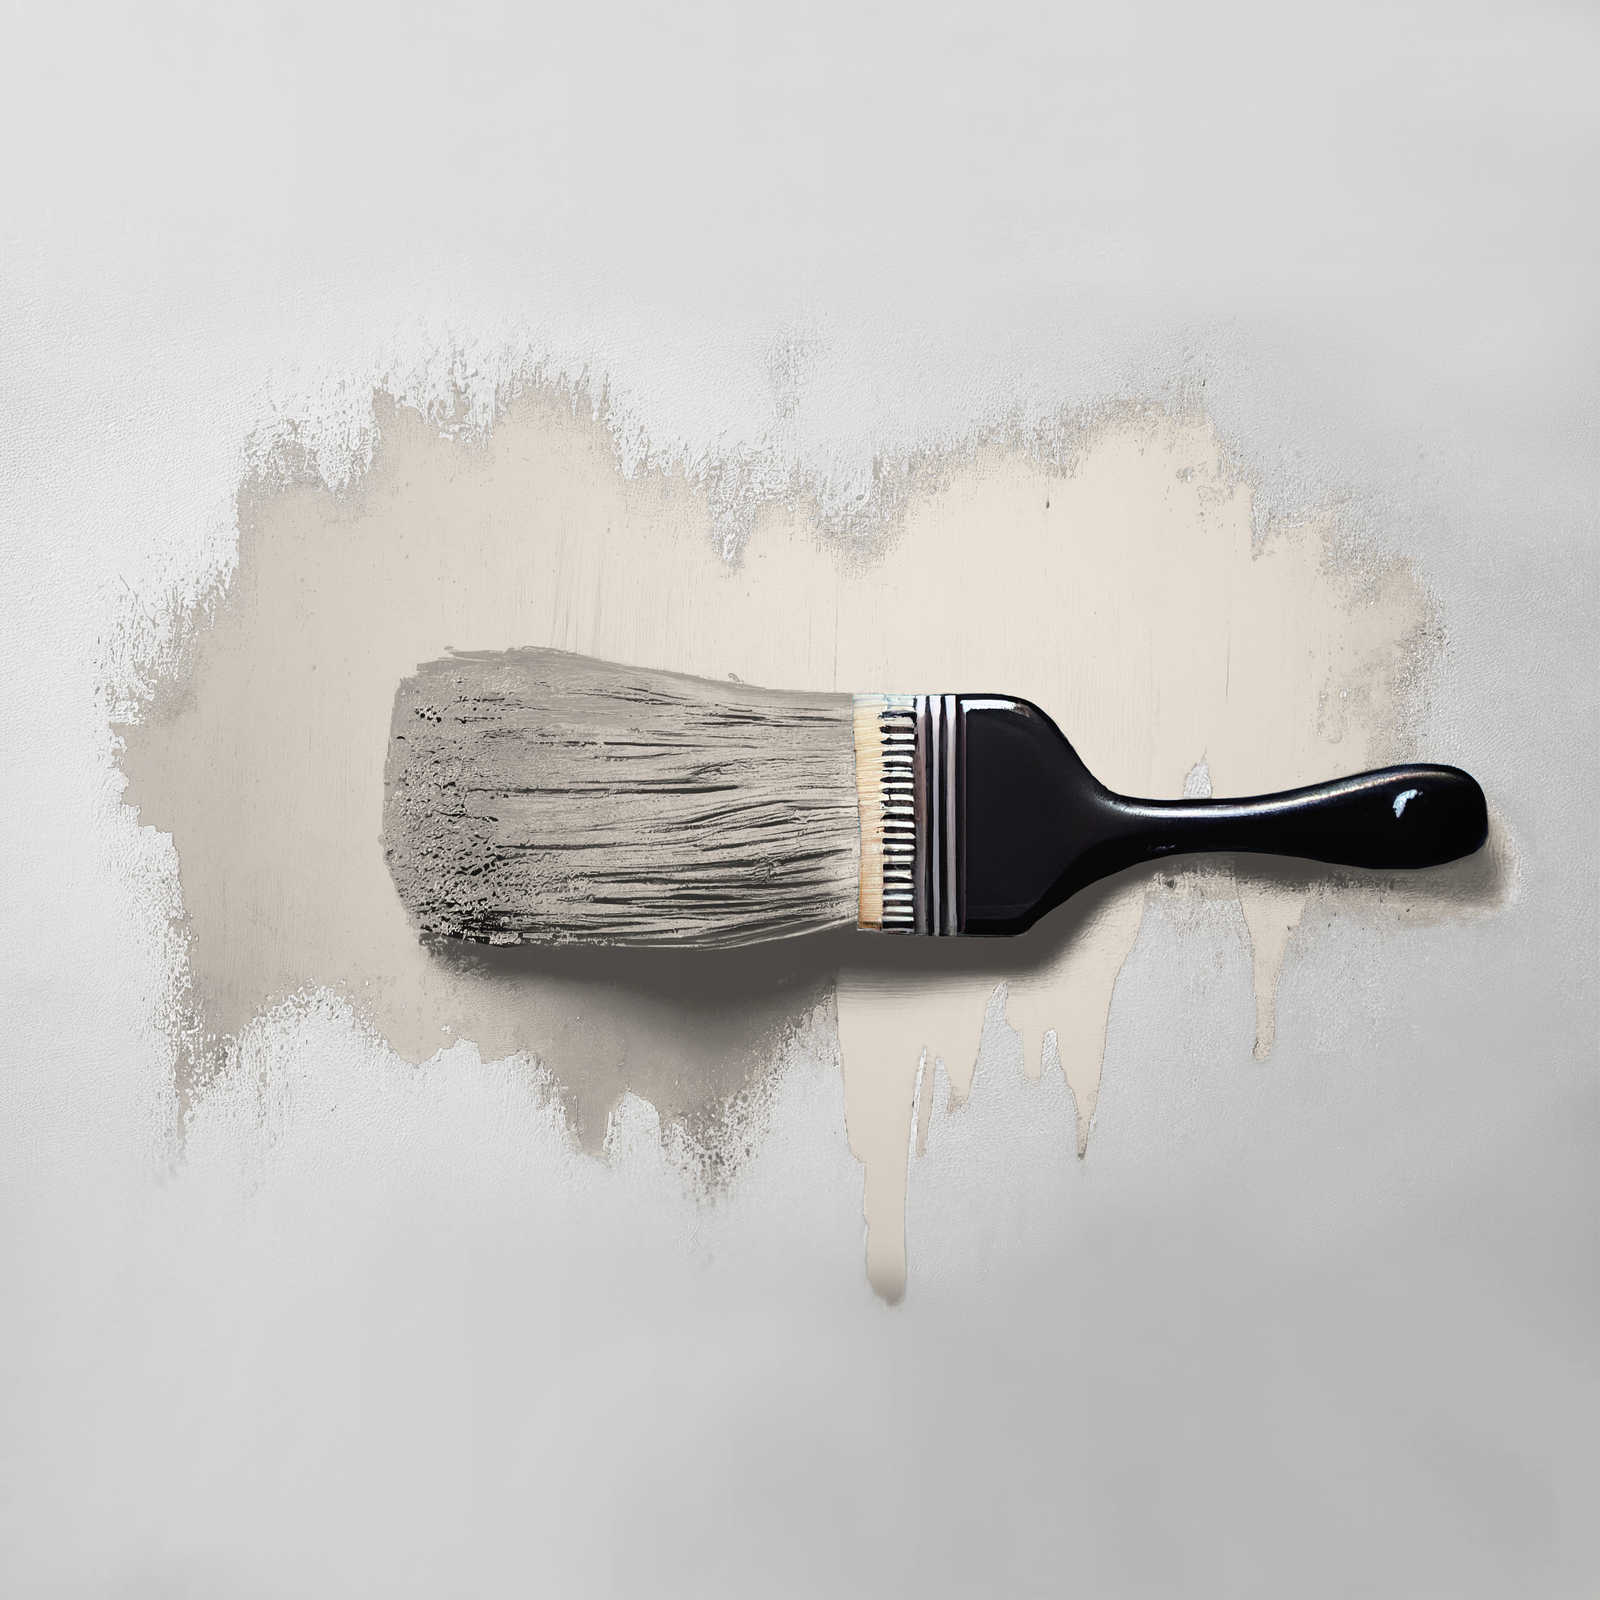             Pintura mural TCK6019 »Melty Marzipan« en beige delicado – 5,0 litro
        